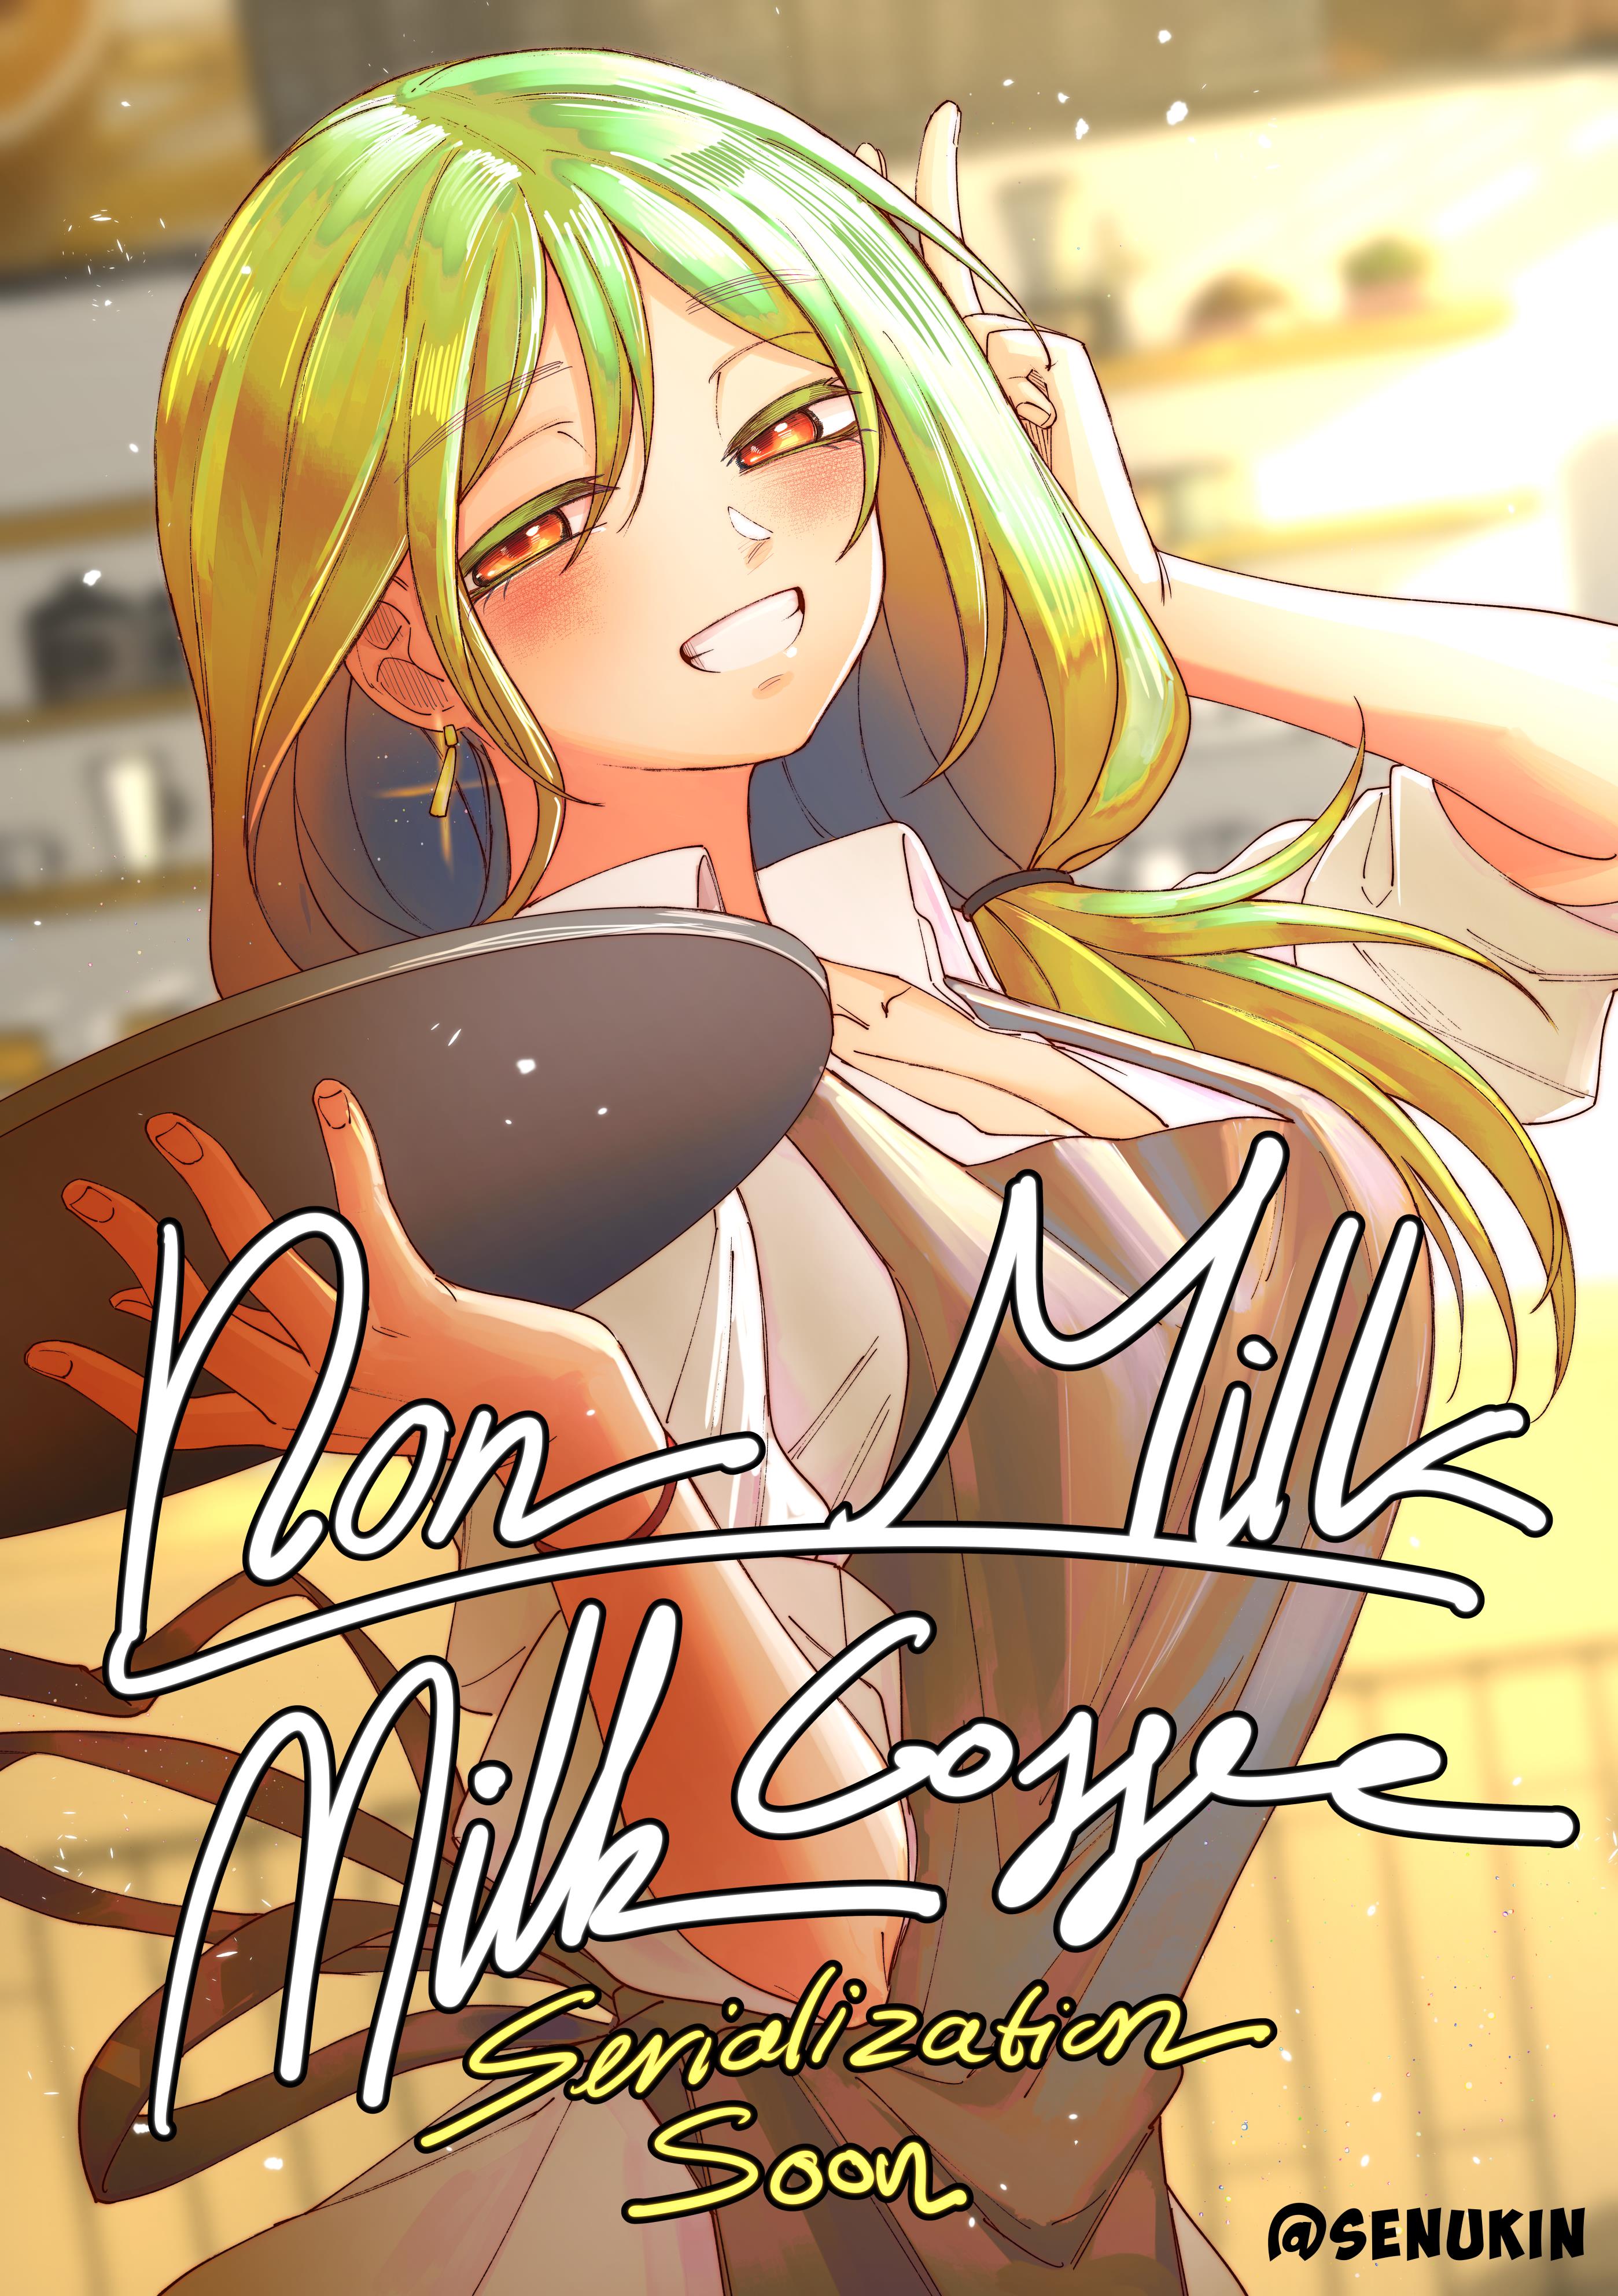 Non Milk-Milk Coffee - Page 1